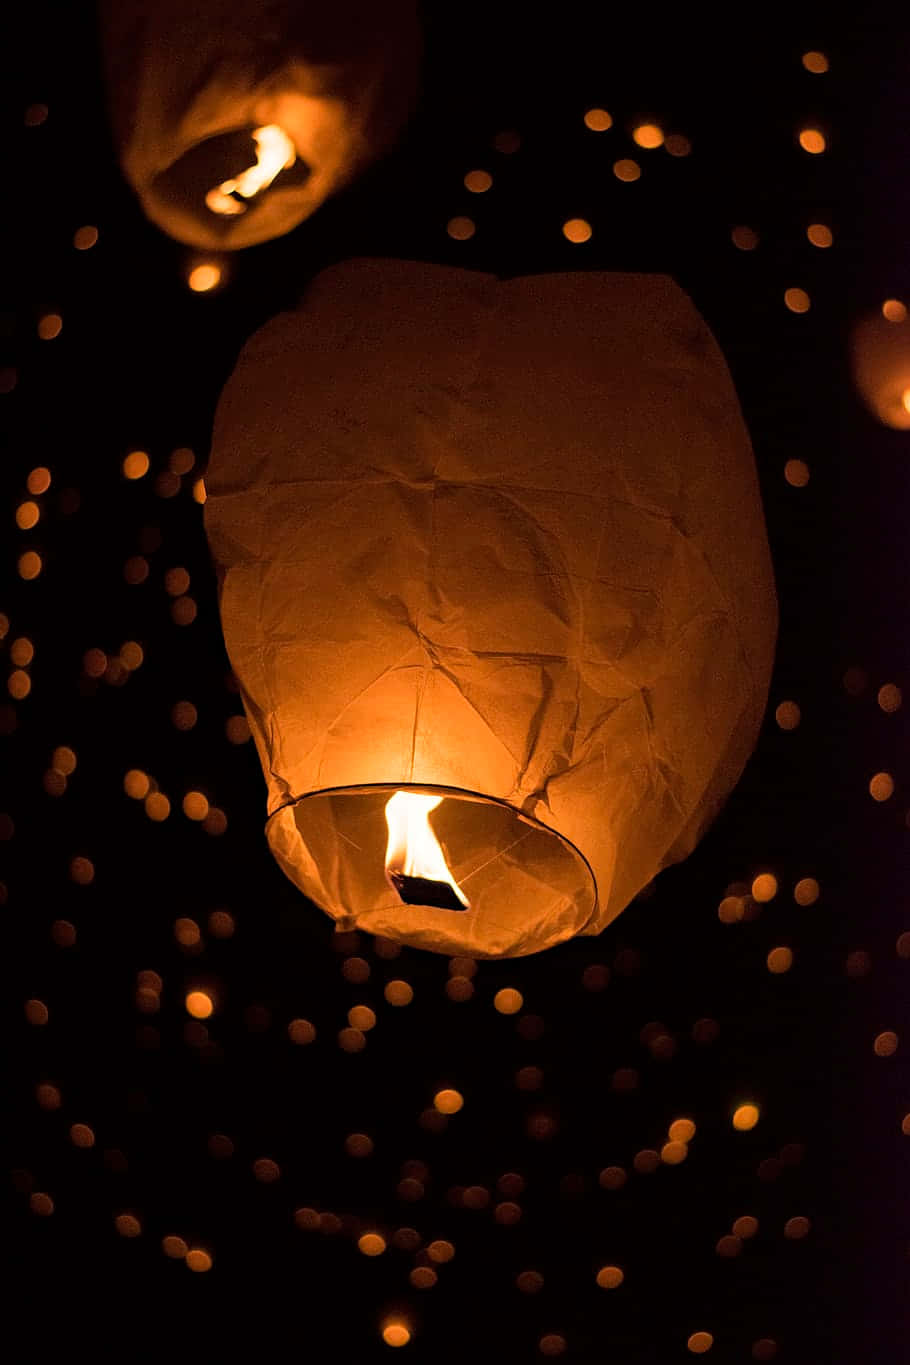 Illuminated Lantern in the Dark